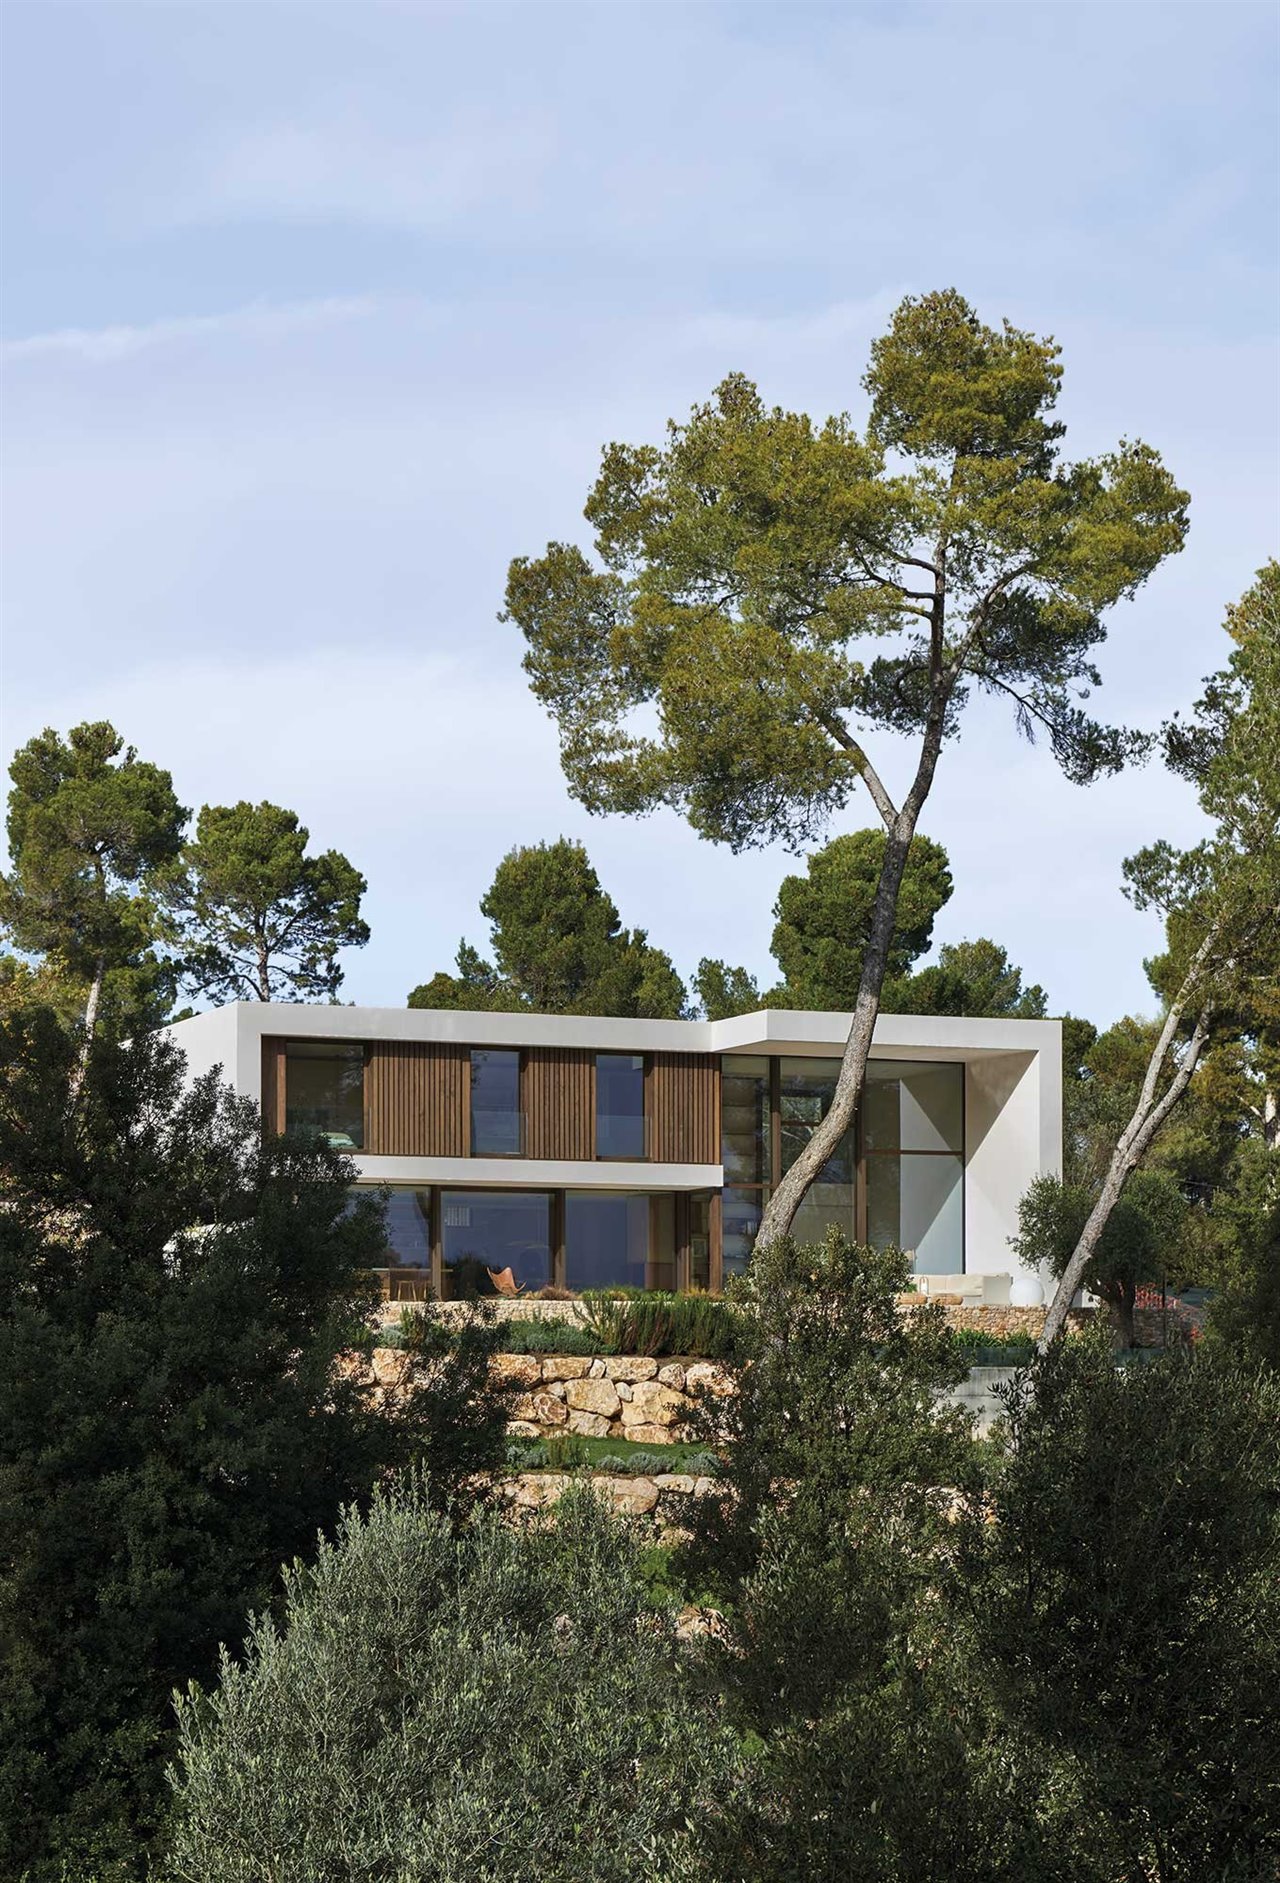 Pinos, olivos y encinas envuelven la casa La Calma, del arquitecto Ramon Esteve, concebida como un refugio para sus propietarios, que busca integrarse en el paisaje a través de su materialidad. 